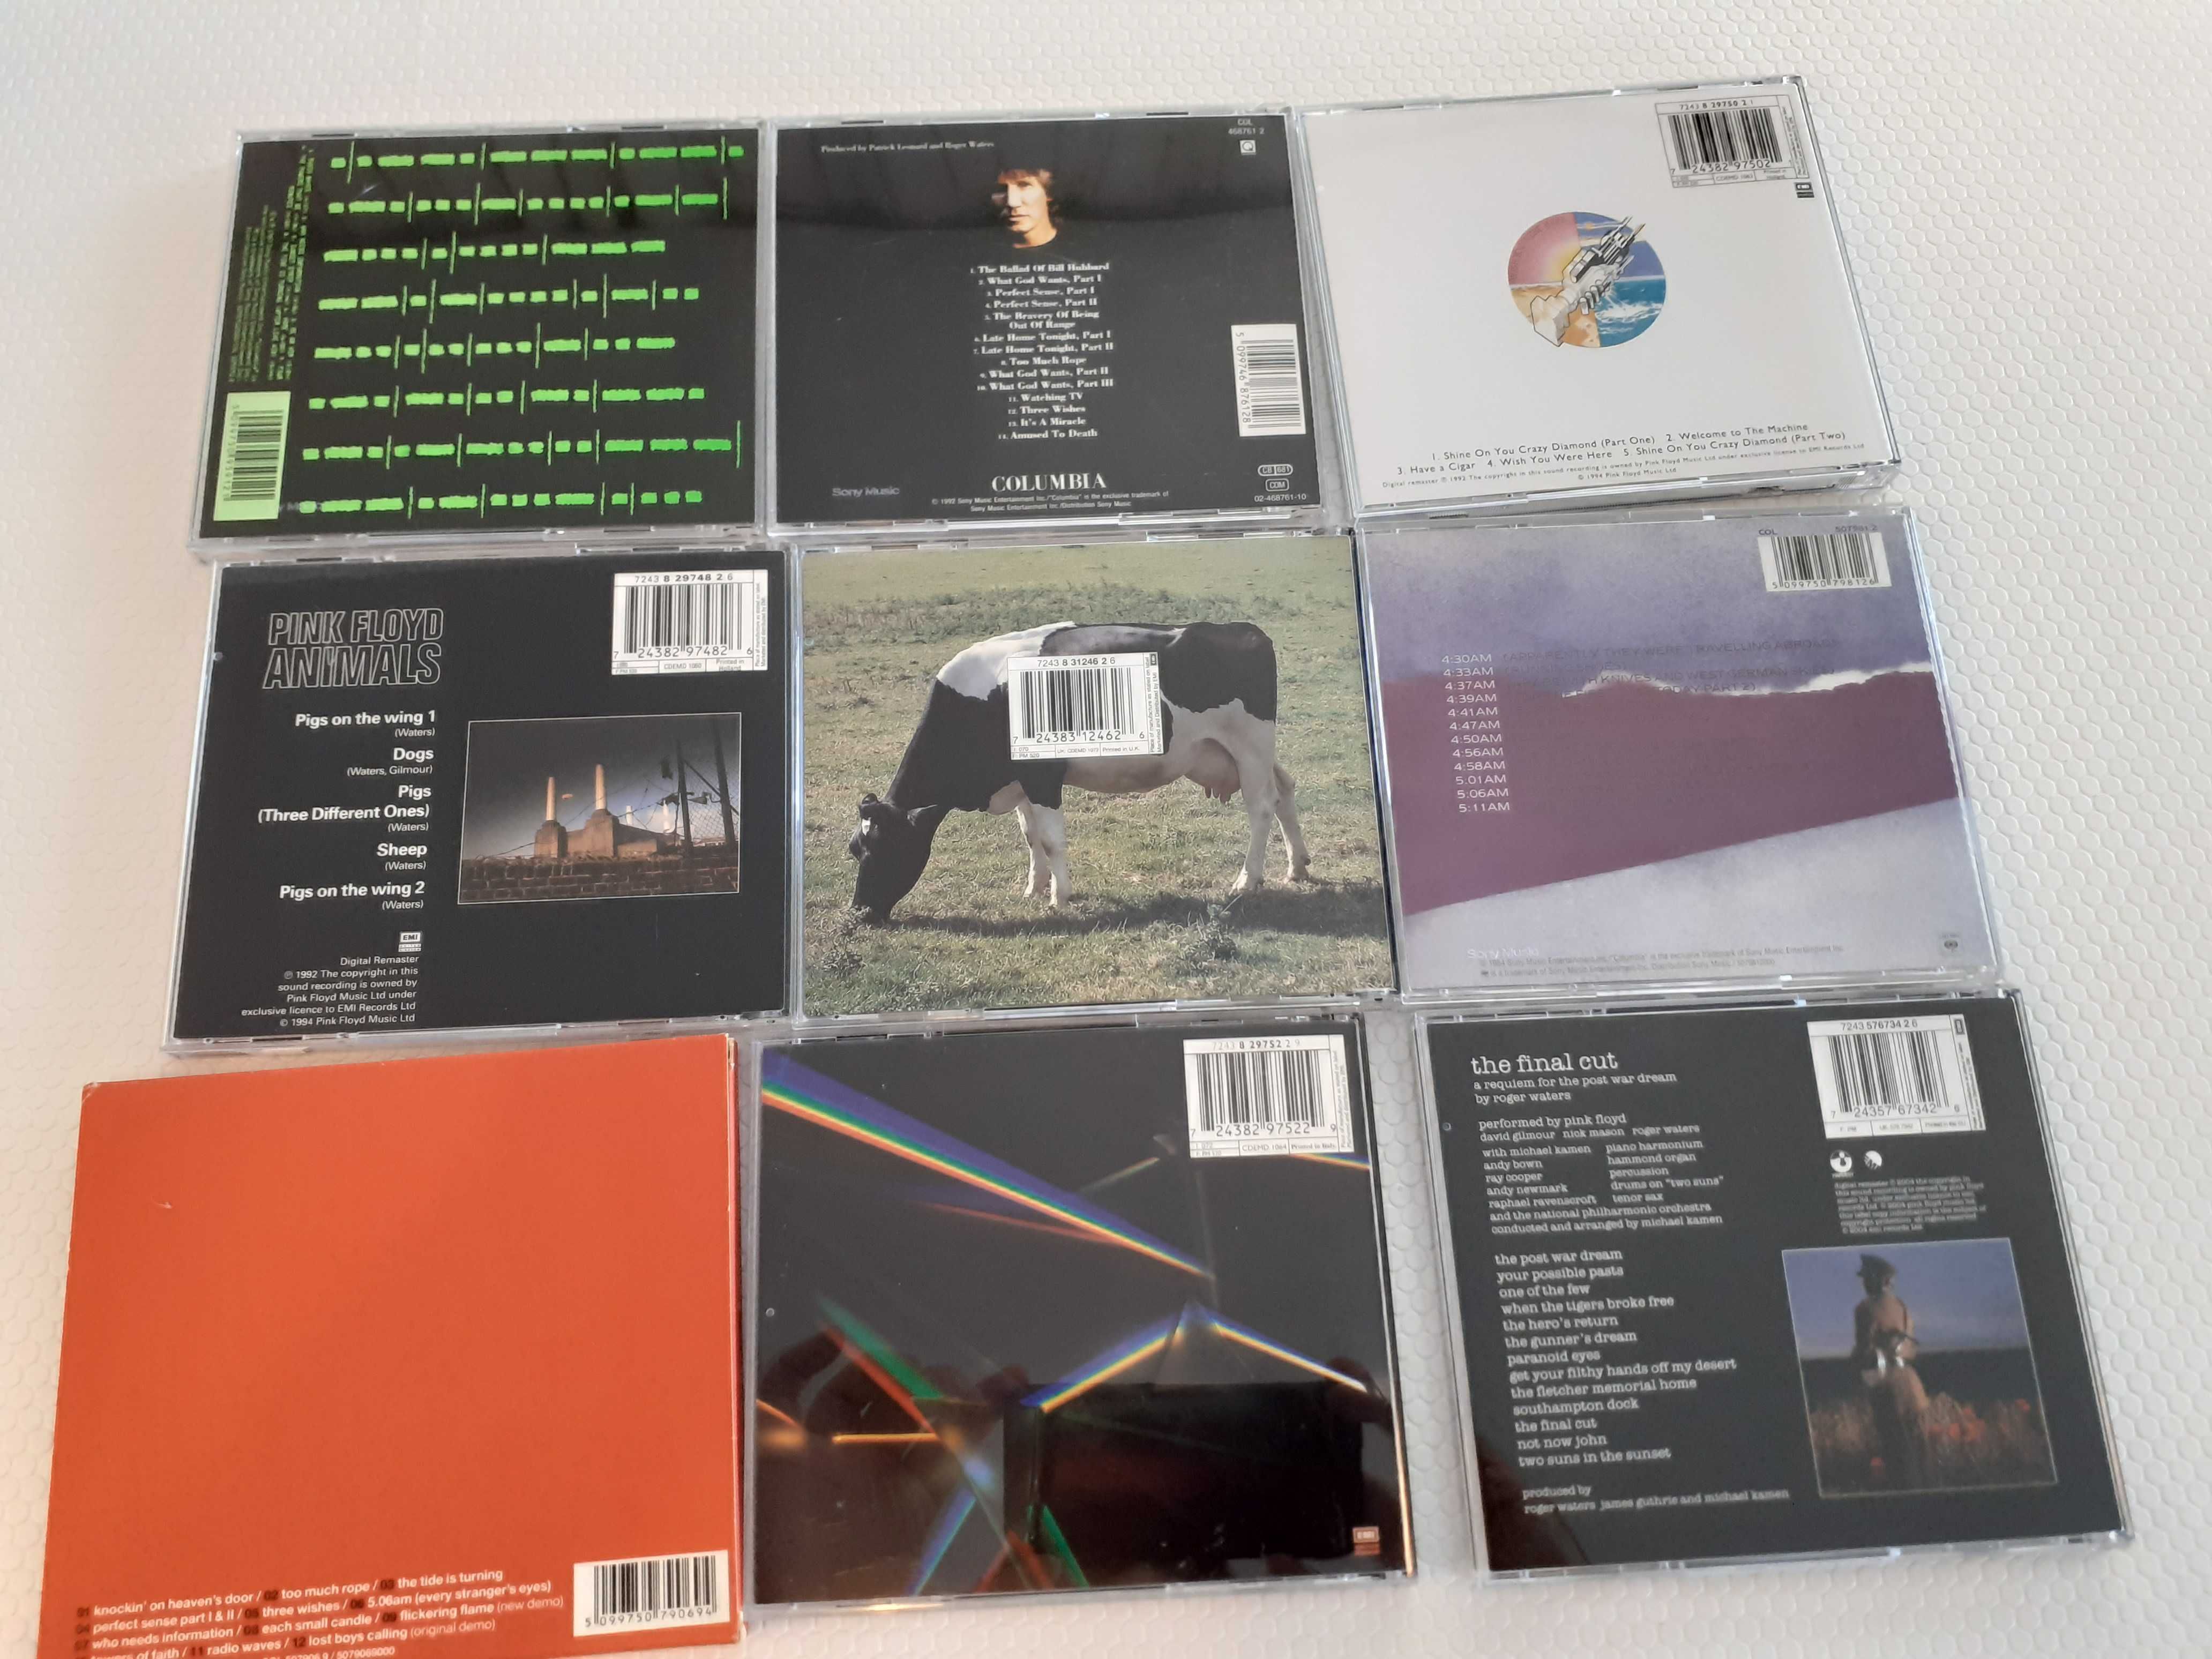 Colecção de CDs de Música Pink Floyd e Roger Waters